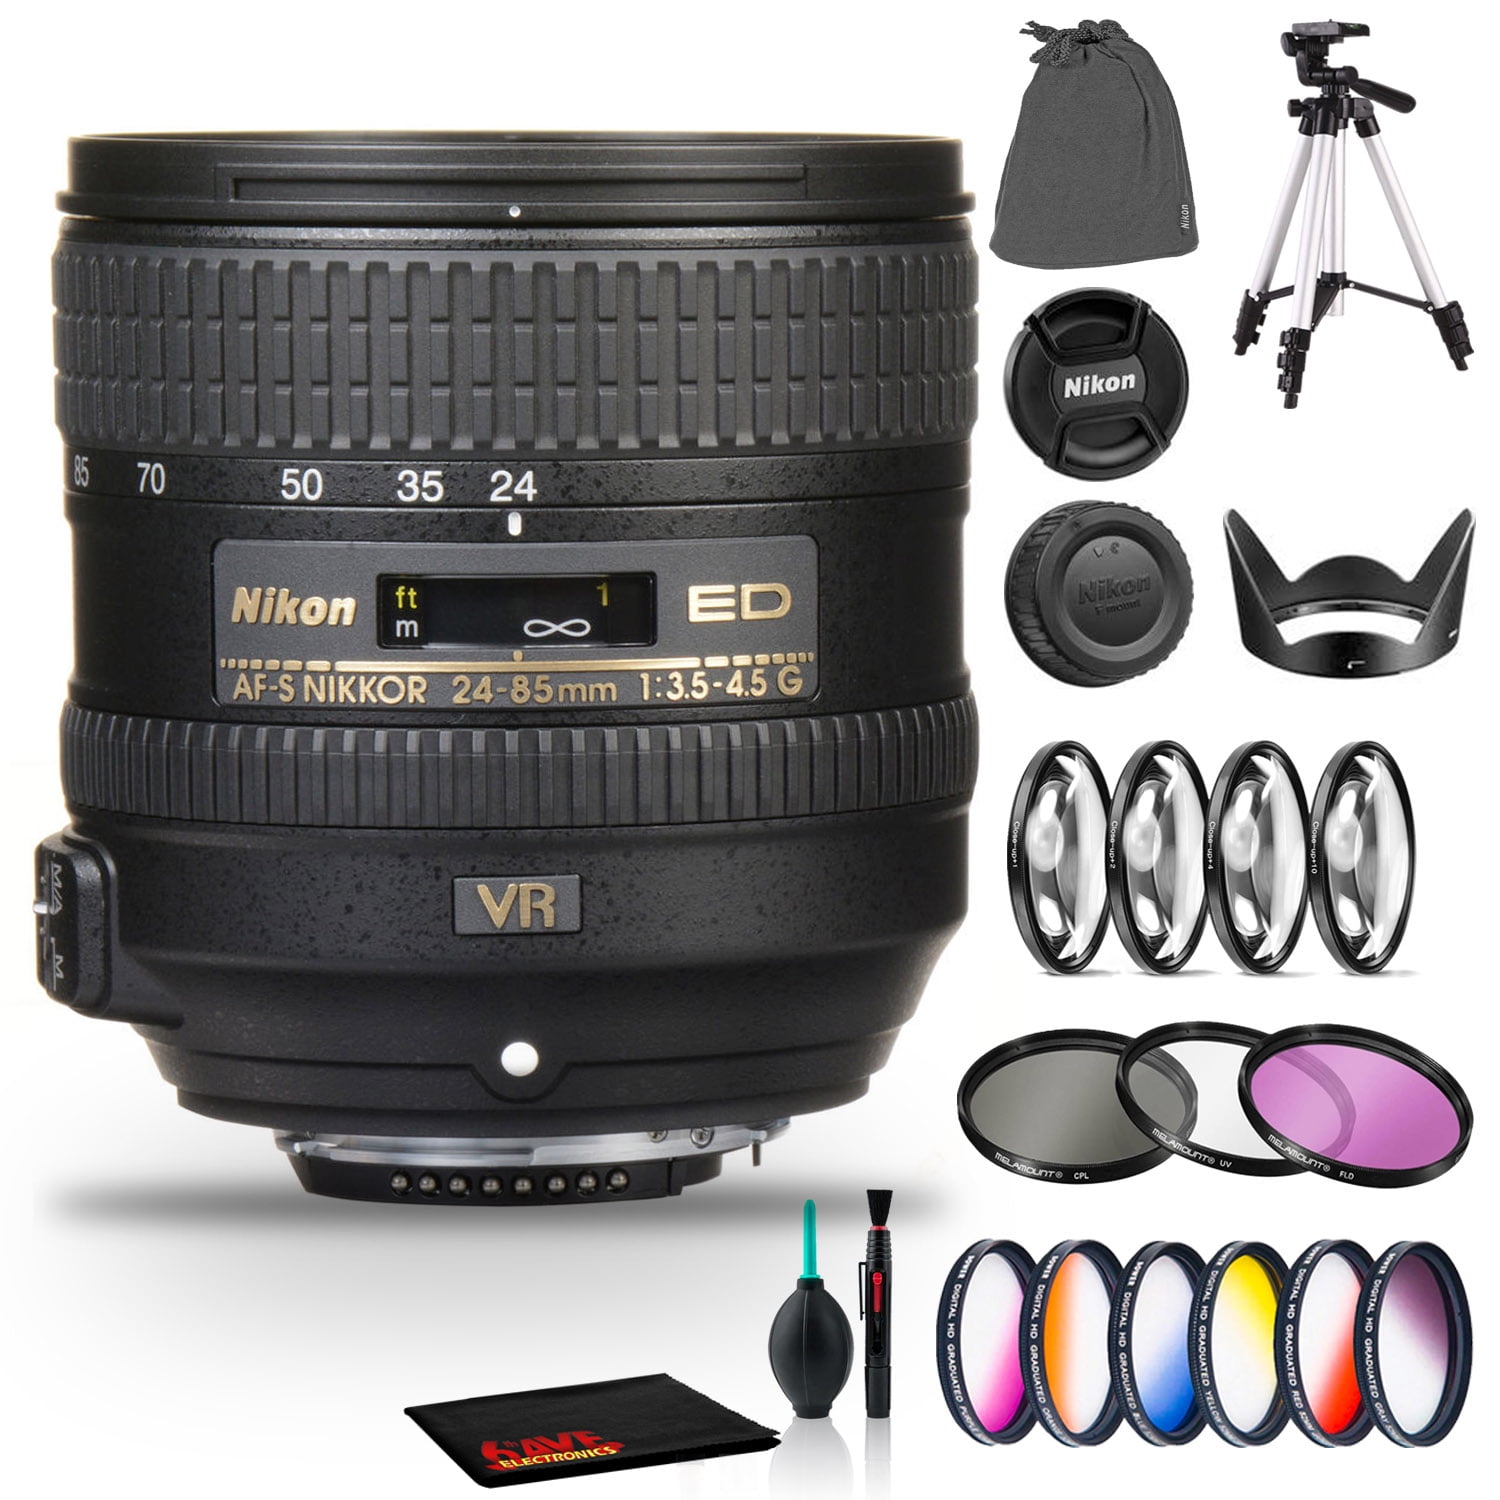 Nikon AF S NIKKOR mm f..5G ED VR Lens Includes Filter